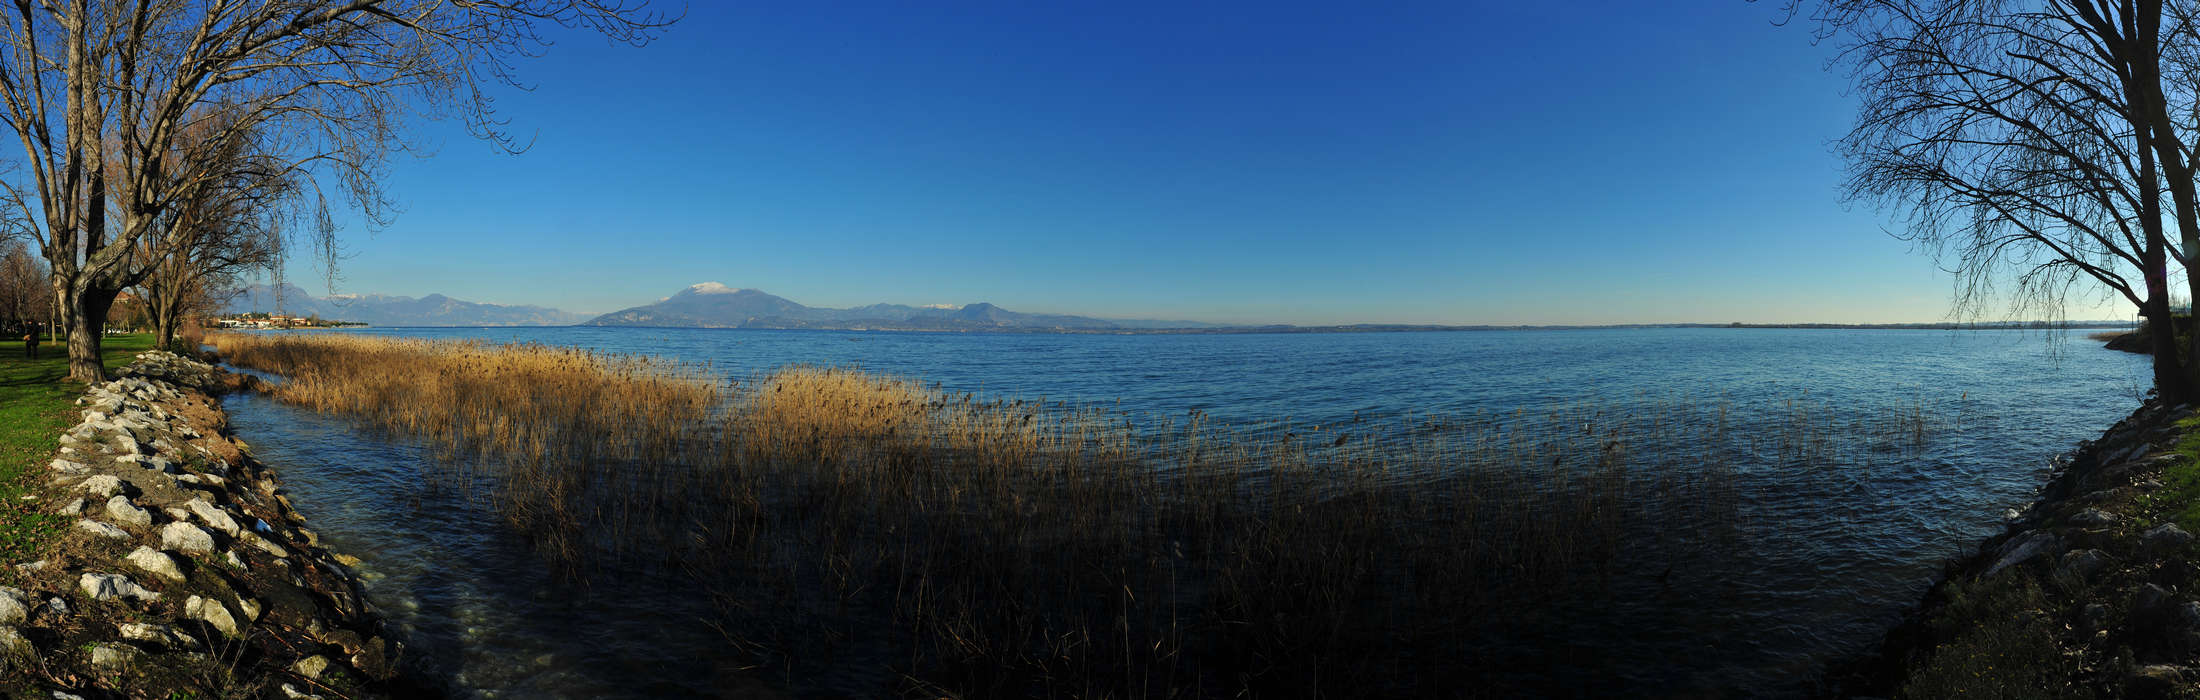 Lago di Garda panoramica da Sirmione